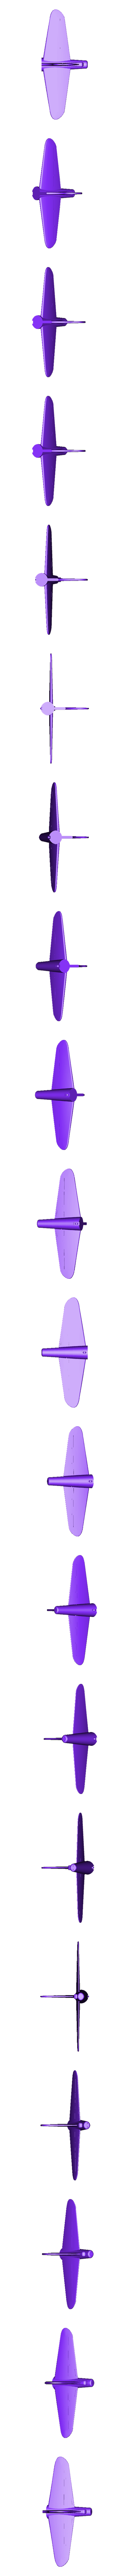 Tail.stl Télécharger fichier STL Boeing B-17 Flying Fortress • Modèle pour impression 3D, Guillaume_975